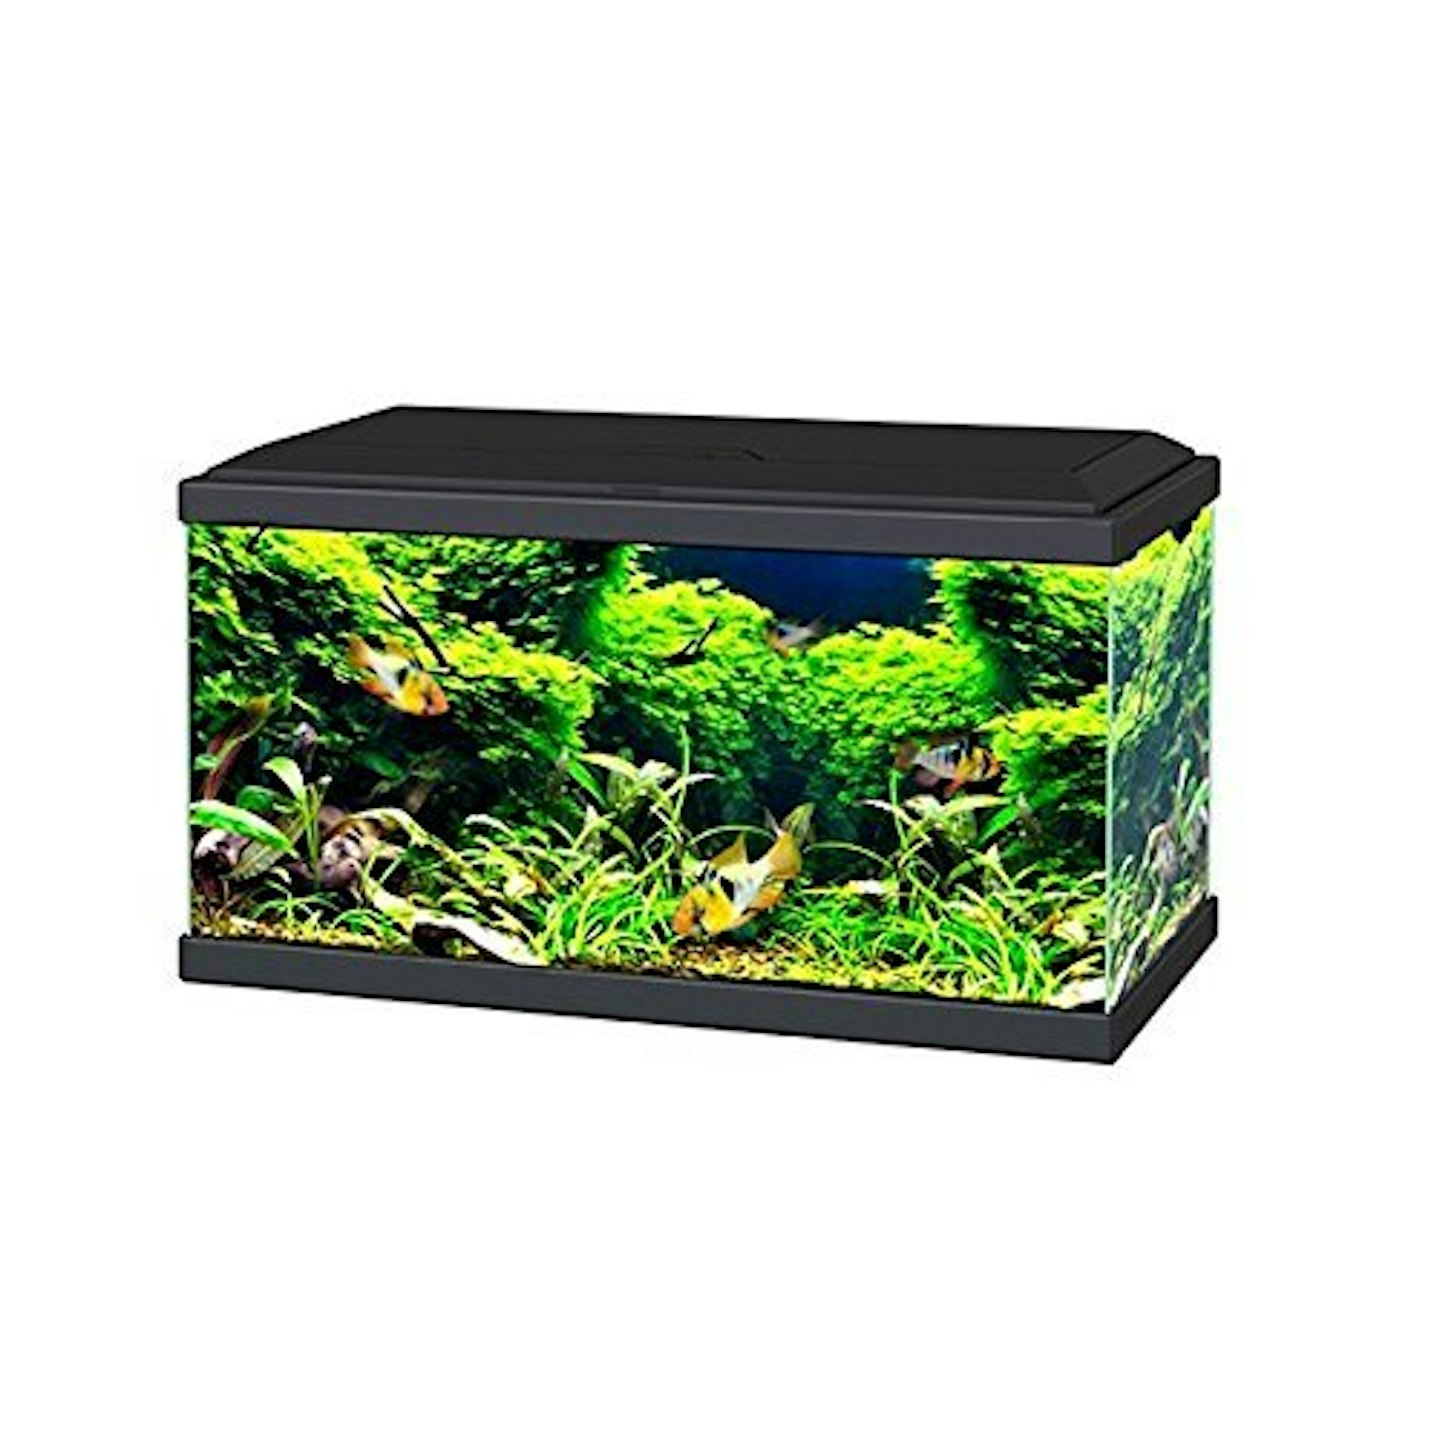 Ciano Black Aqua 60 LED Tropical Glass Aquarium